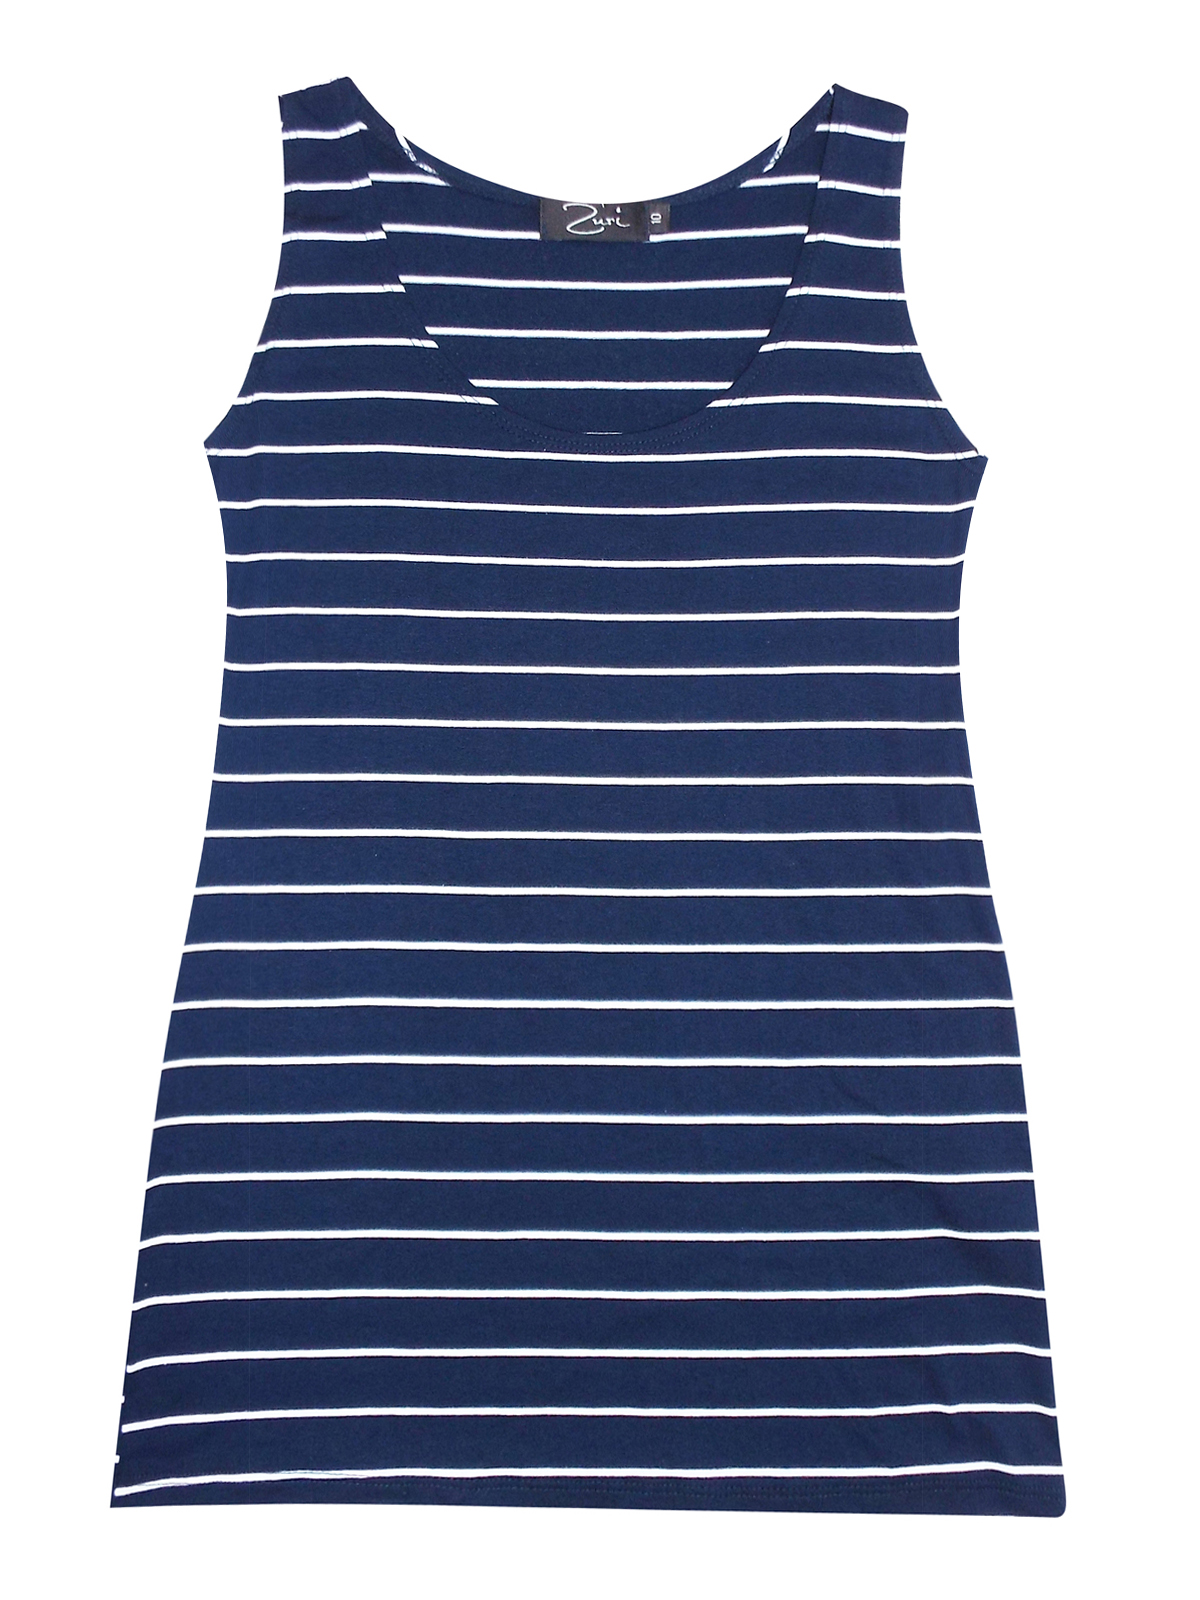 Zuri - - Zuri NAVY Striped Jersey Vest Top - Size 10 to 16